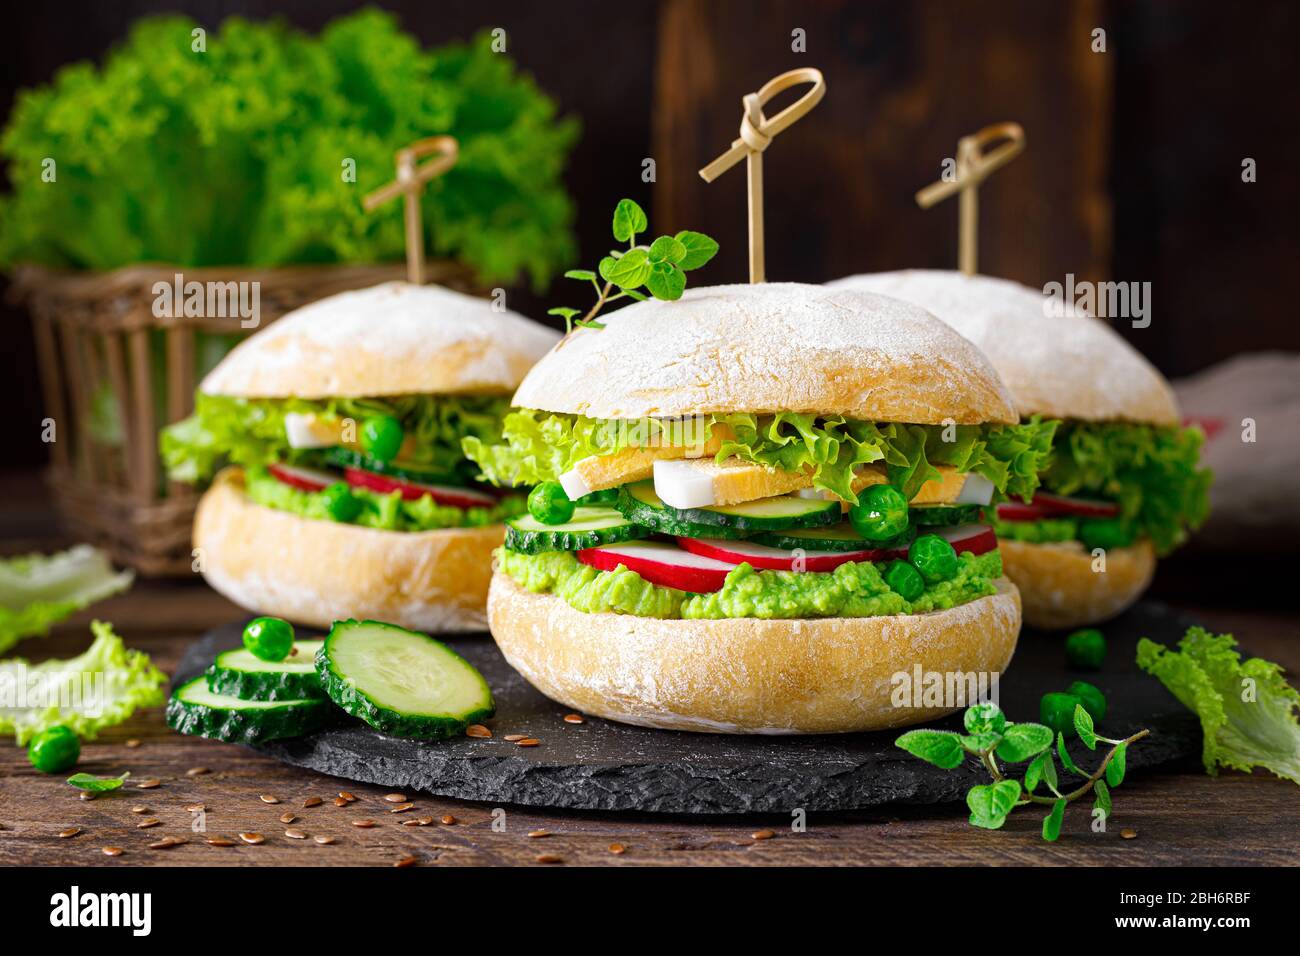 Hamburger mit hausgemachtem Ciabatta-Brötchen, gekochtem Ei, Rettich, Gurke, Salat und frischem Grünerbsen-Püree Stockfoto